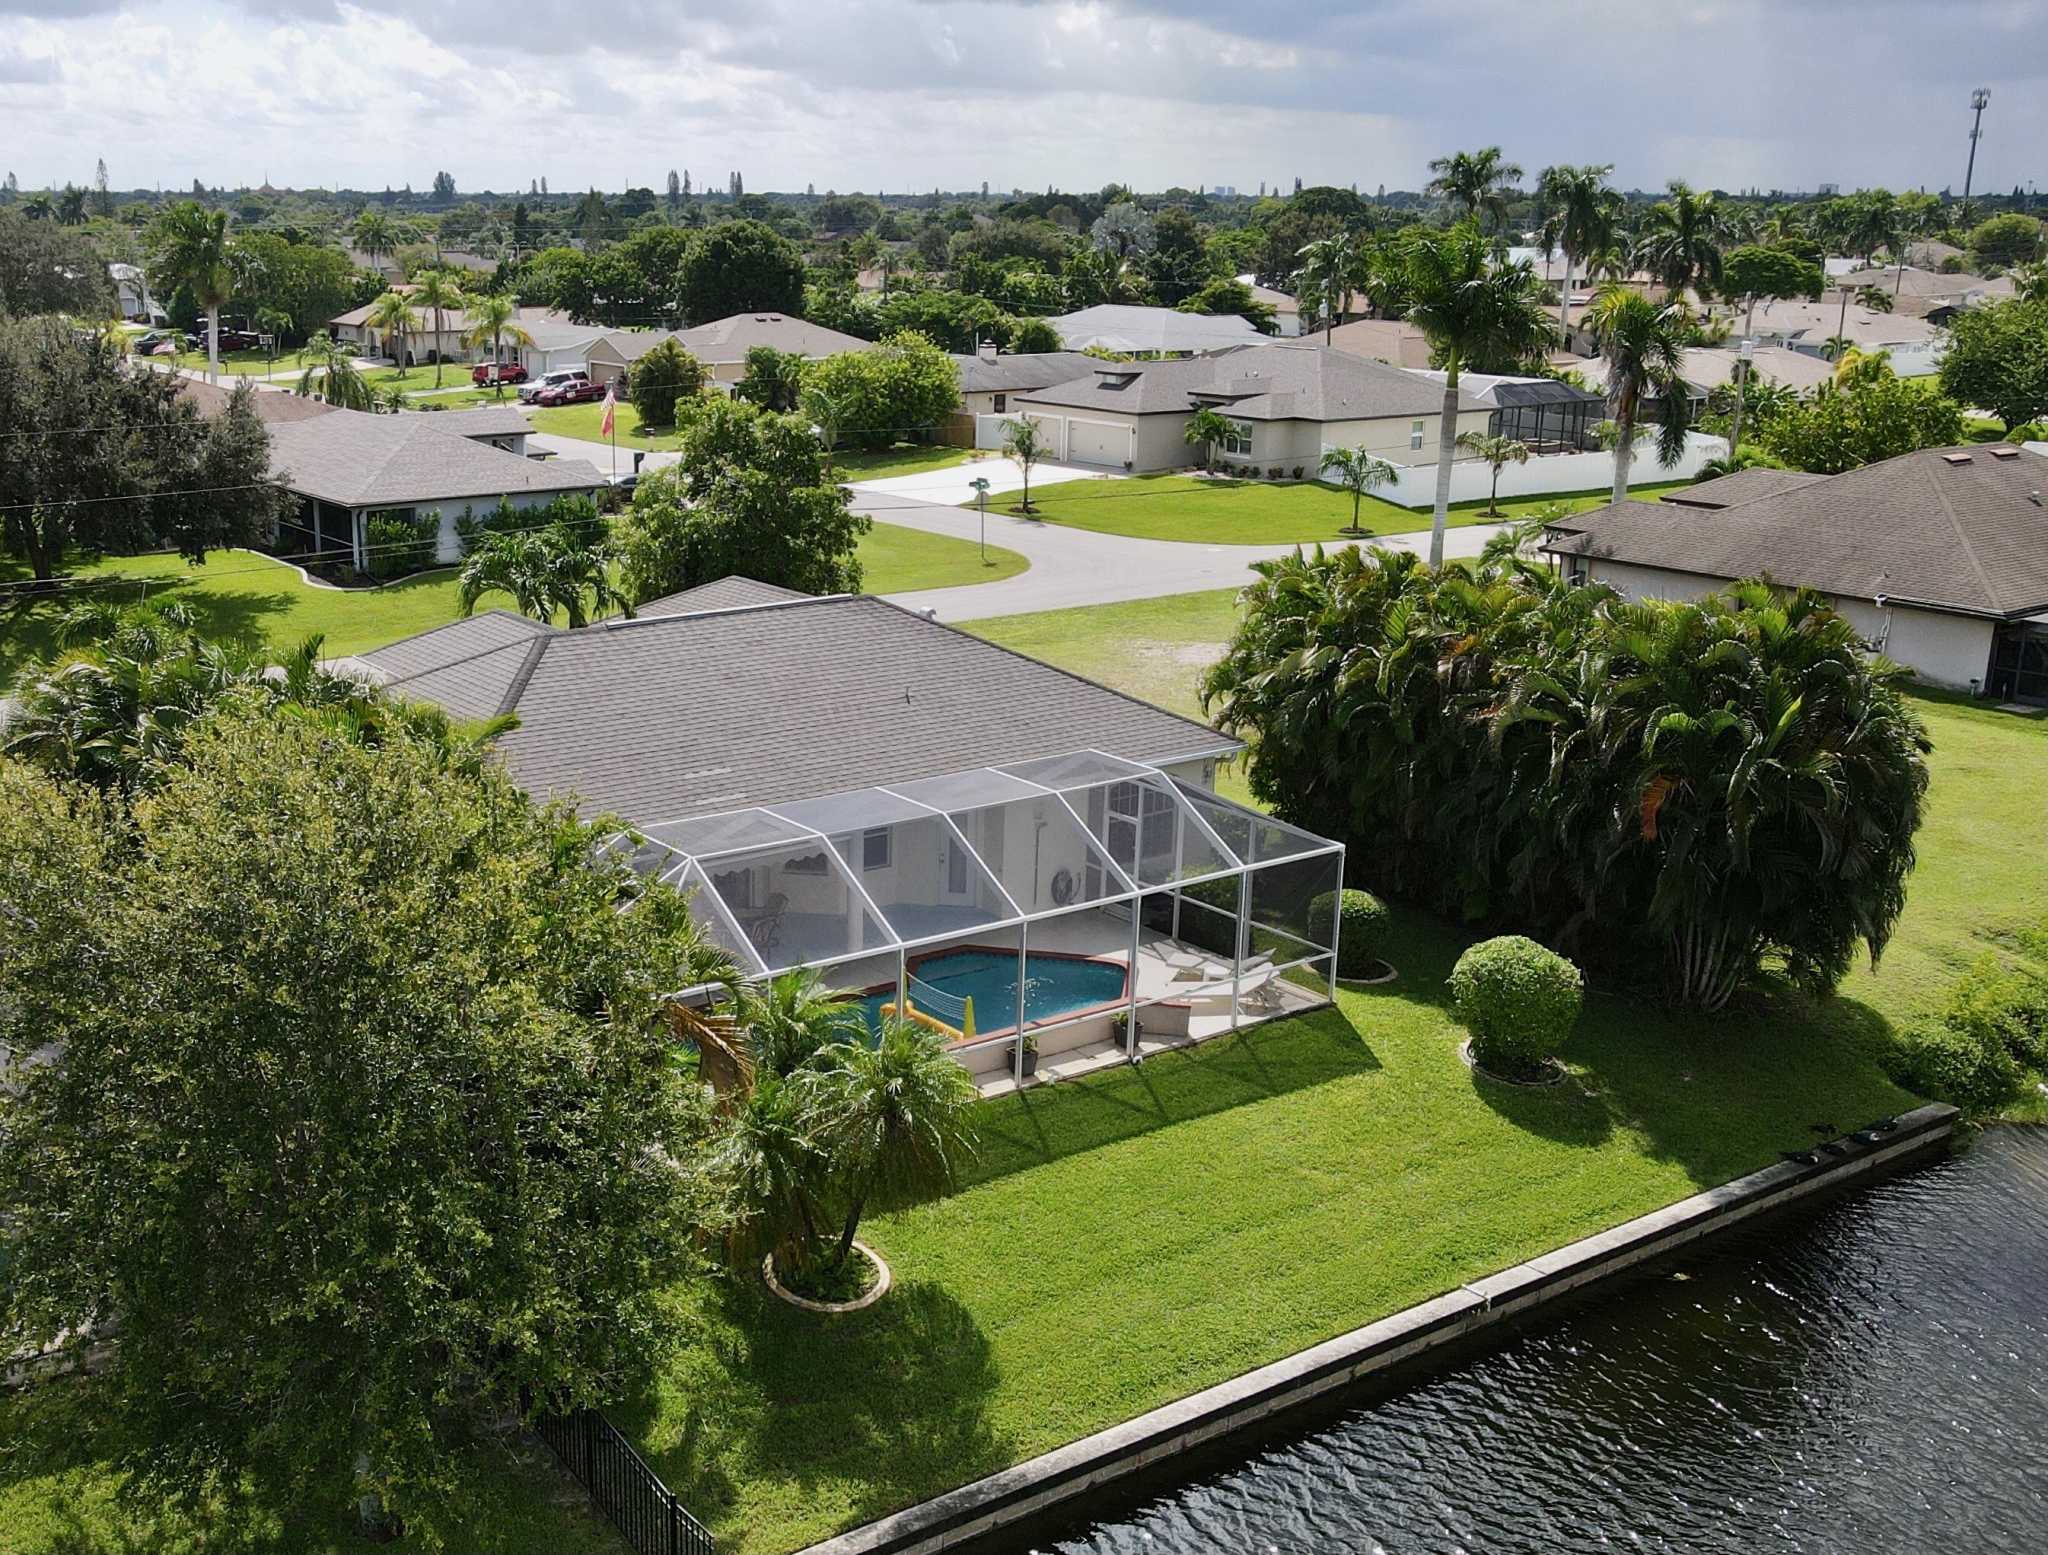 Villa Bellevue - Villa mit Pool, romantischem Wasserblick und Florida-Feeling pur